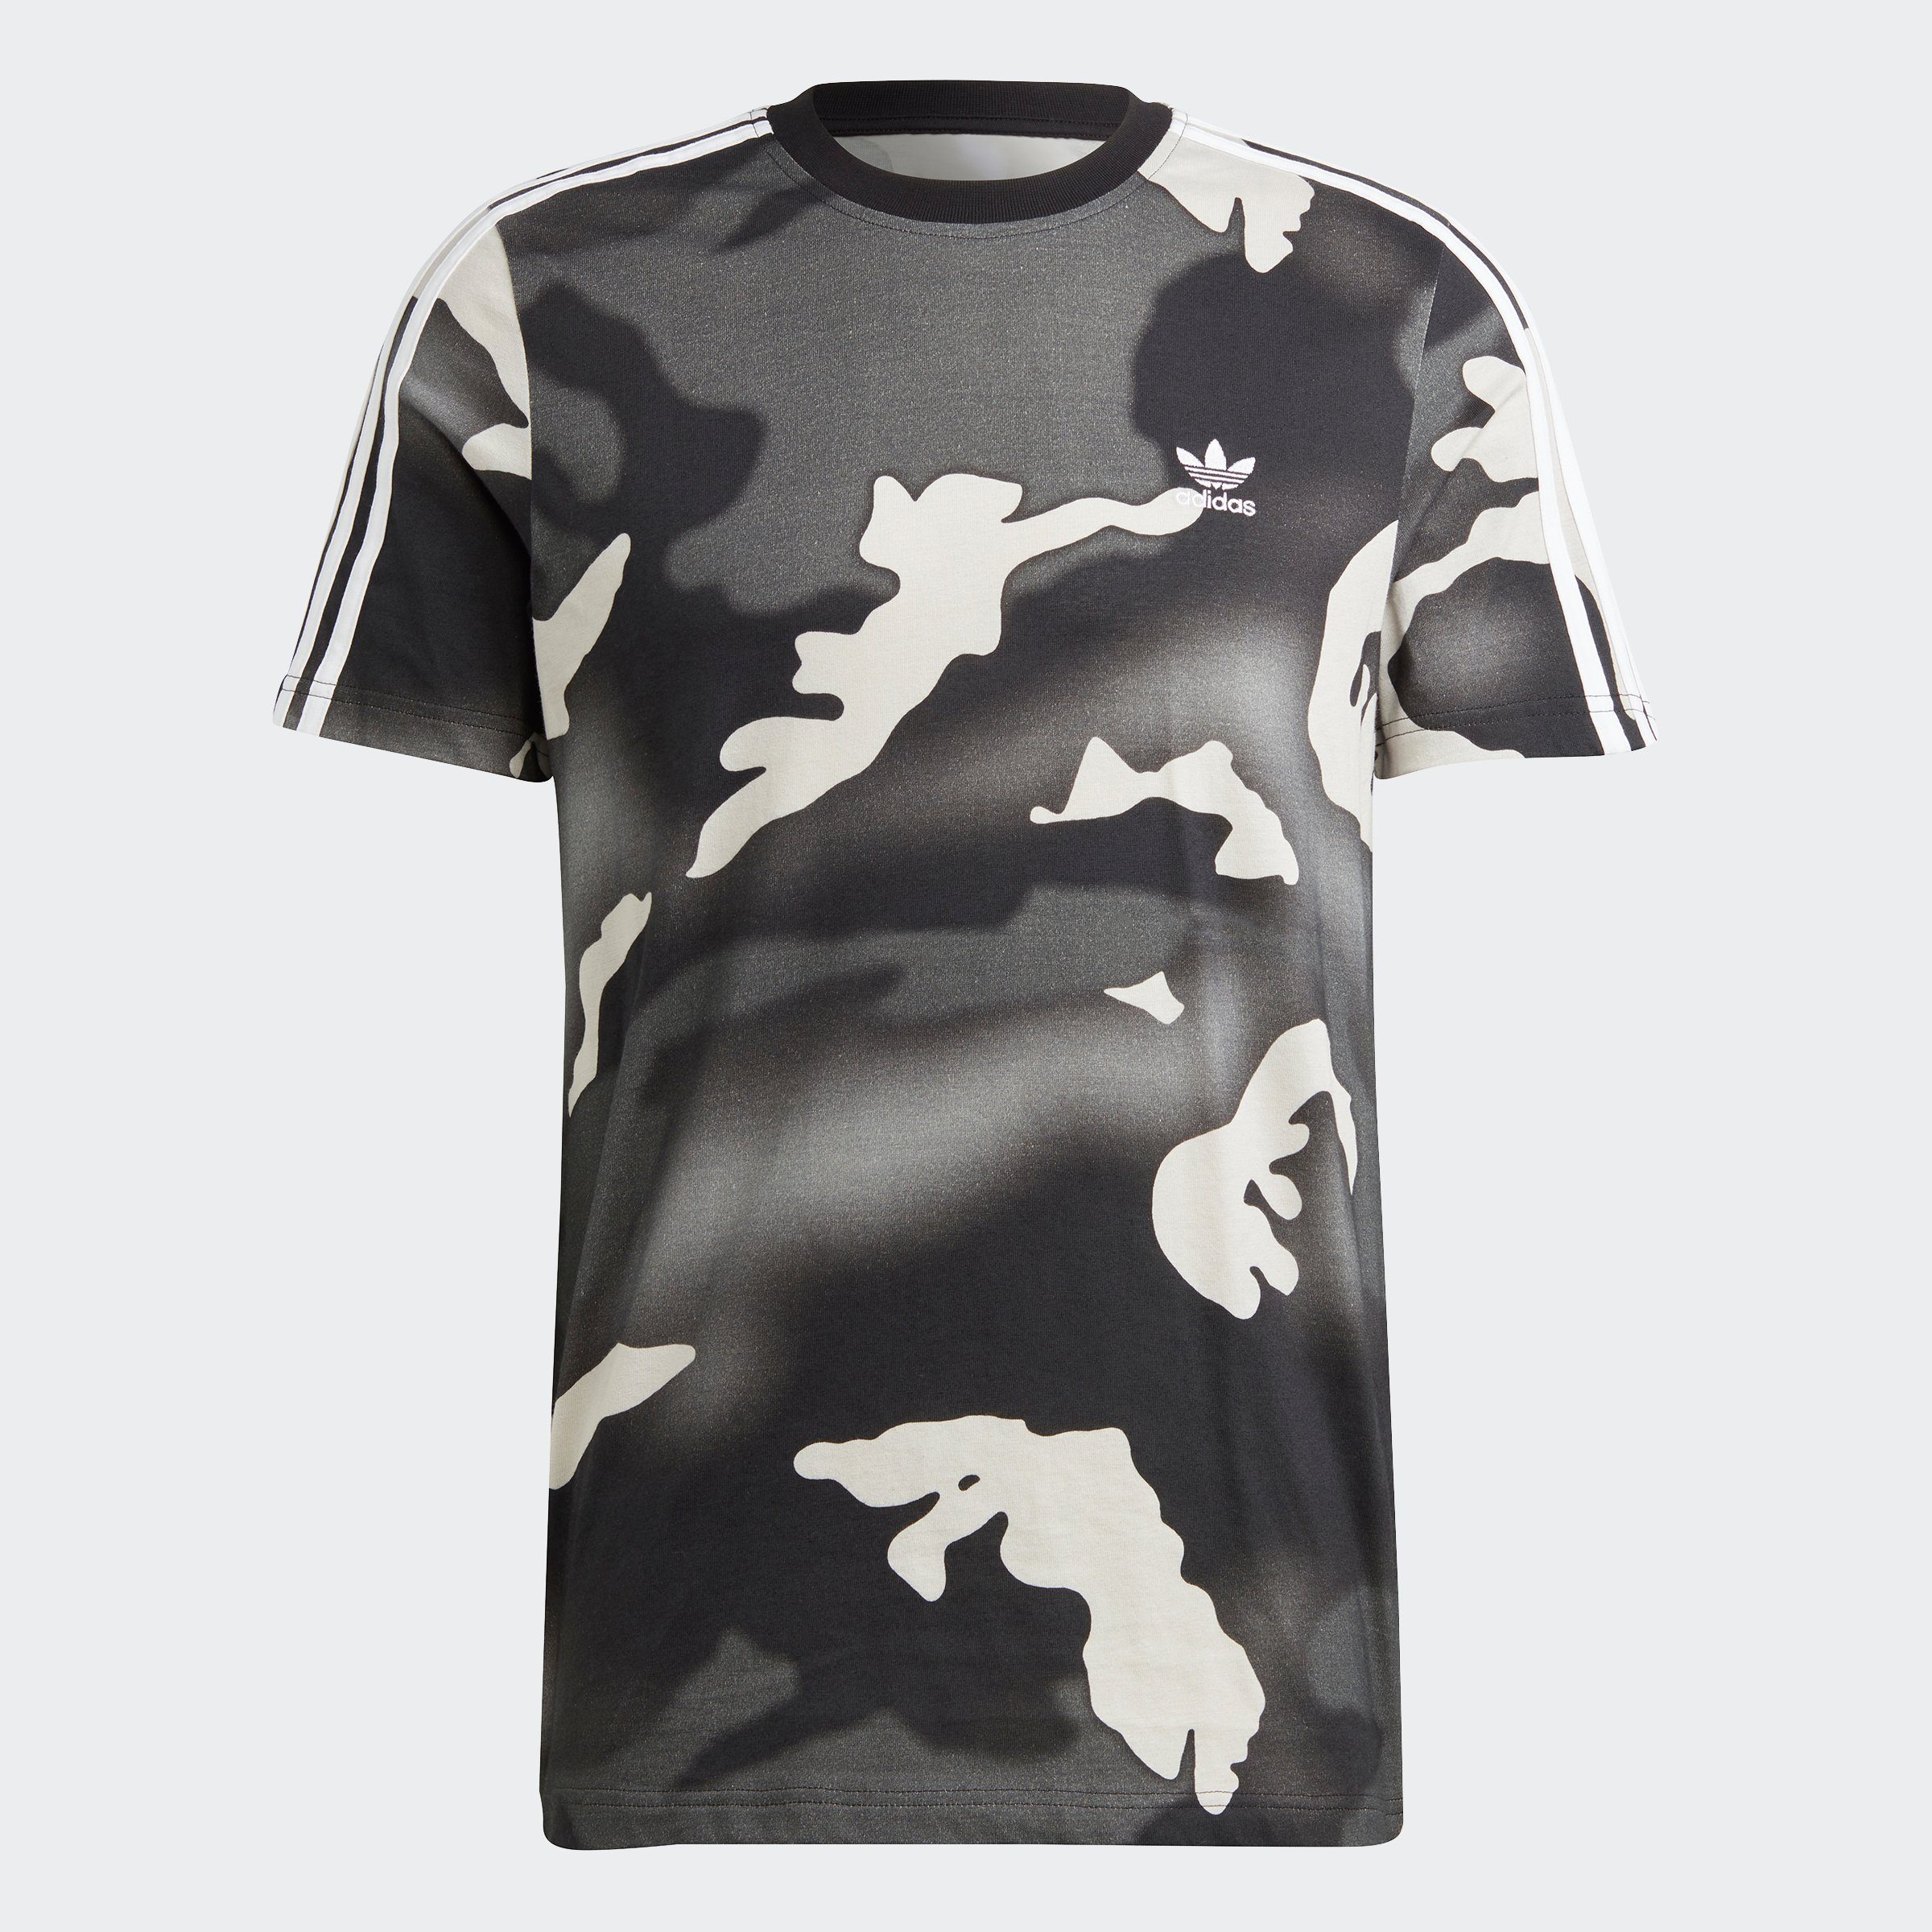 CAMO GRAPHICS adidas PRINT T-Shirt Originals ALLOVER